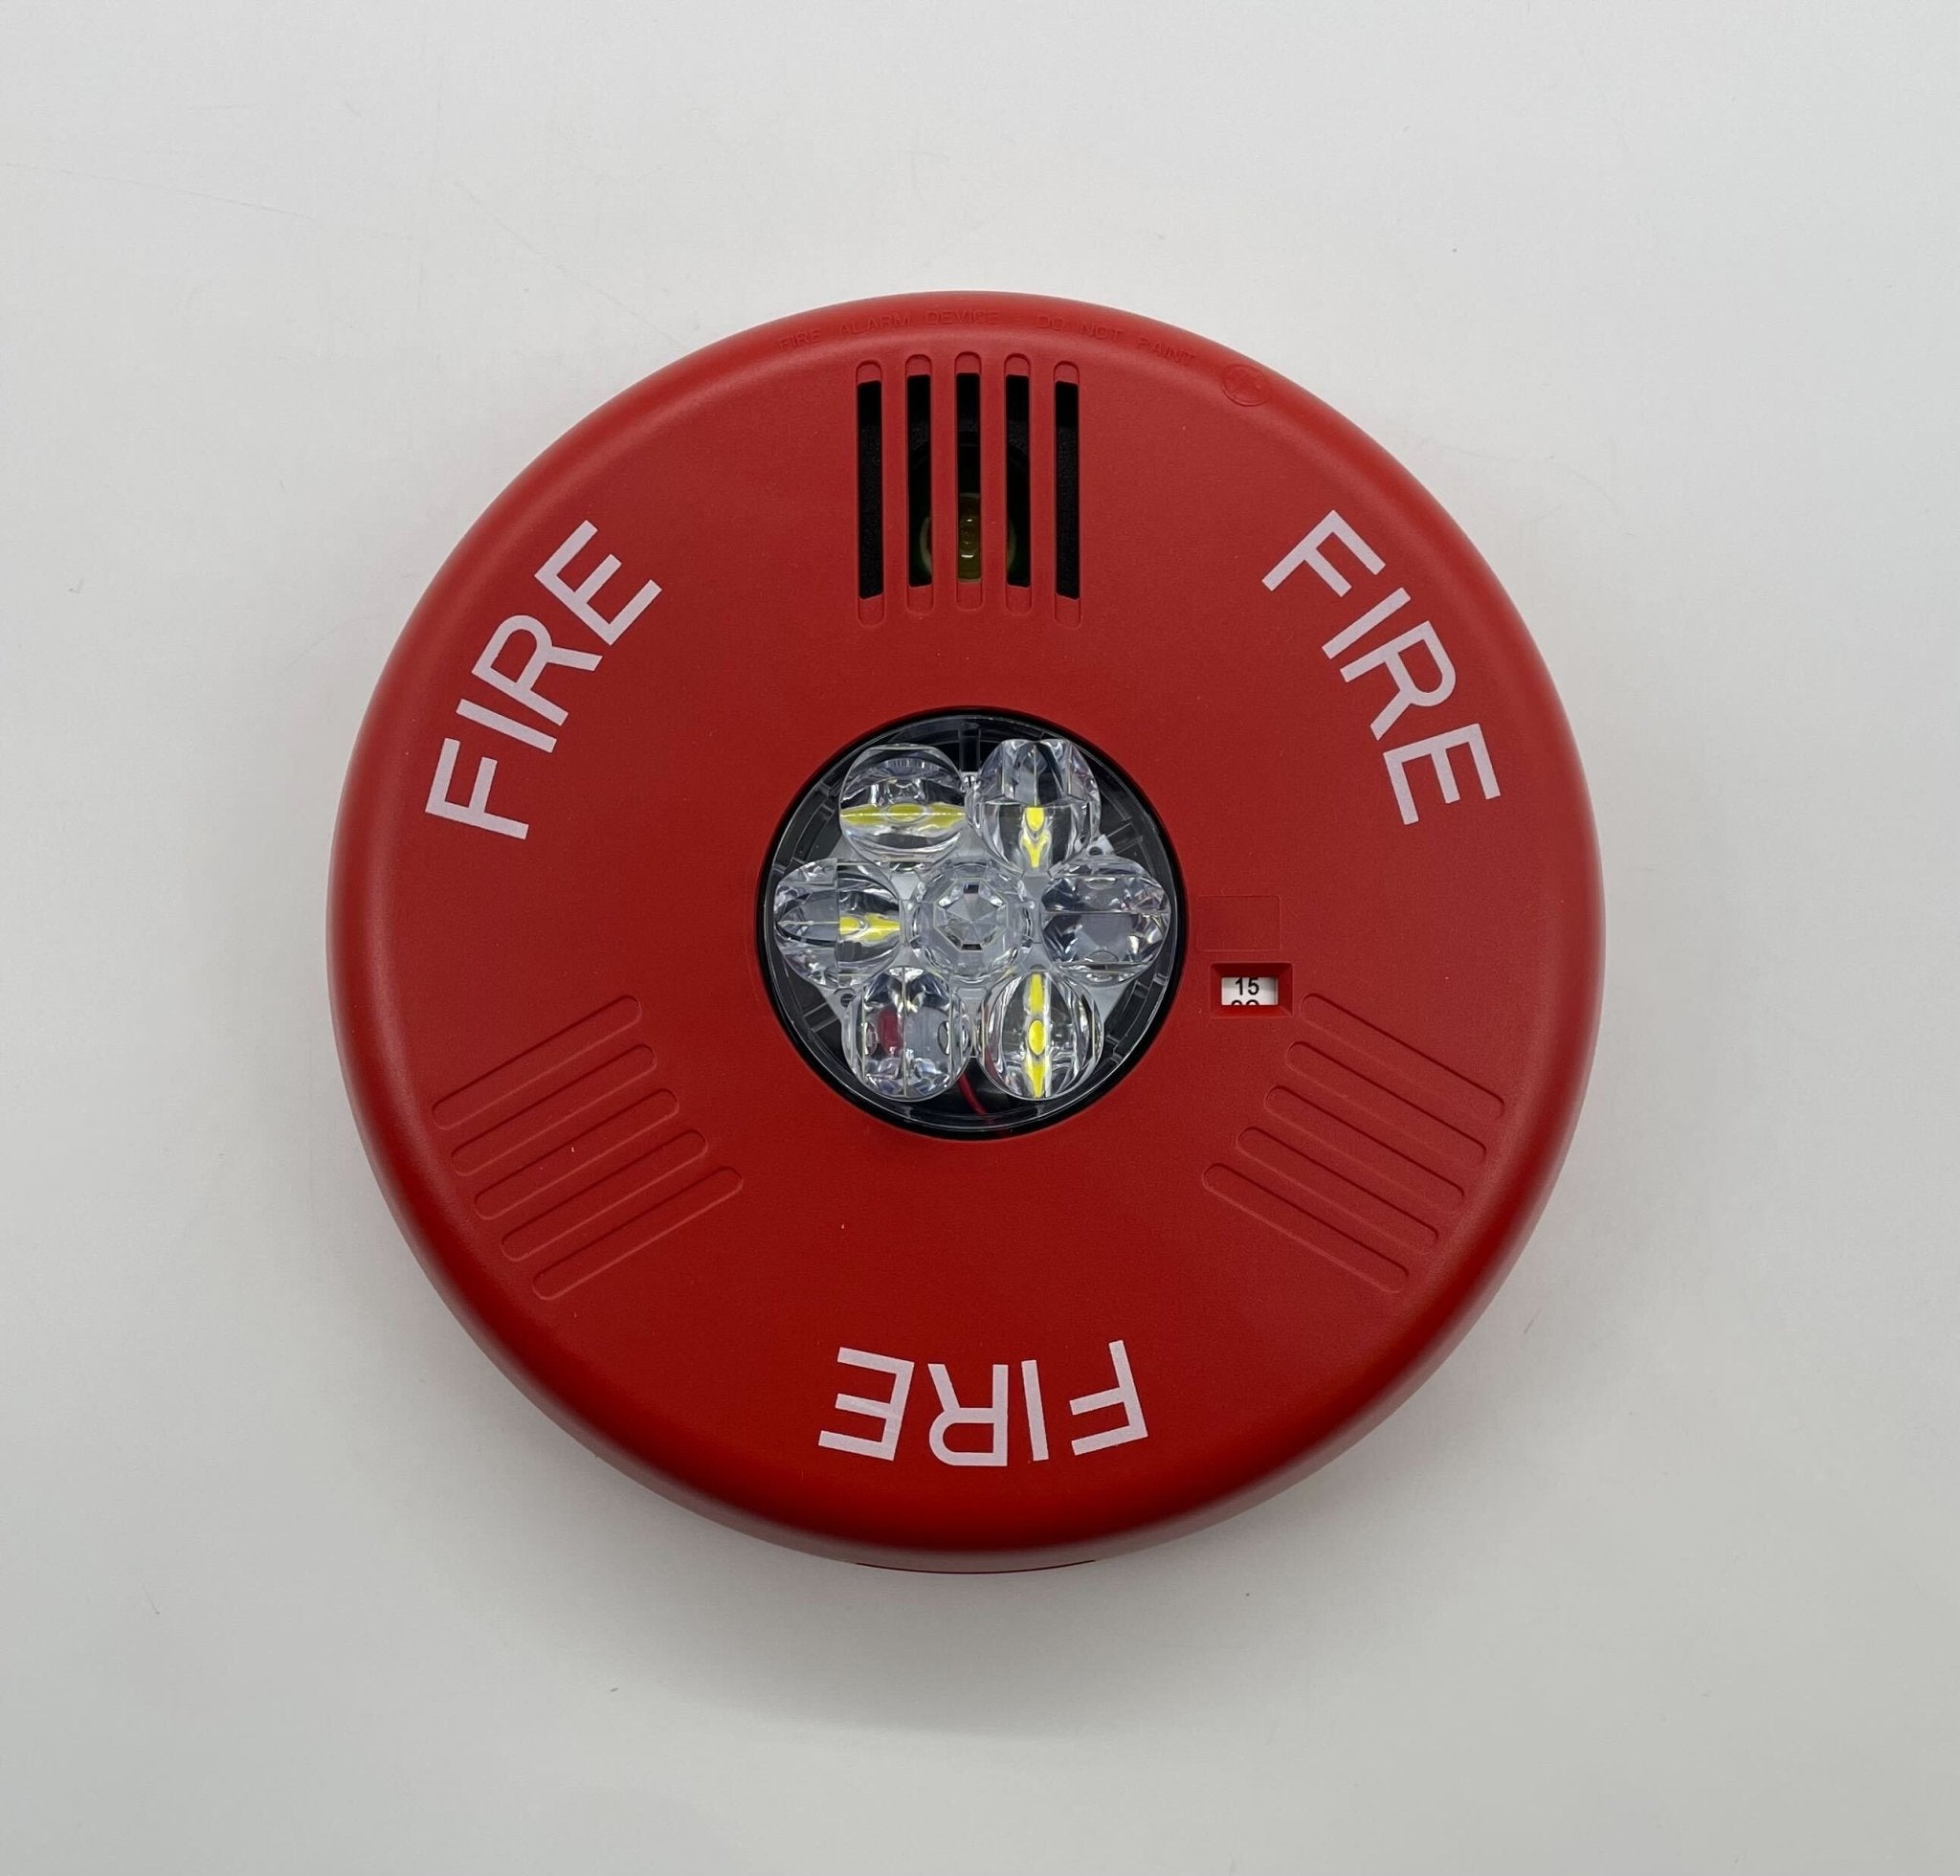 Wheelock ELHSRC - The Fire Alarm Supplier